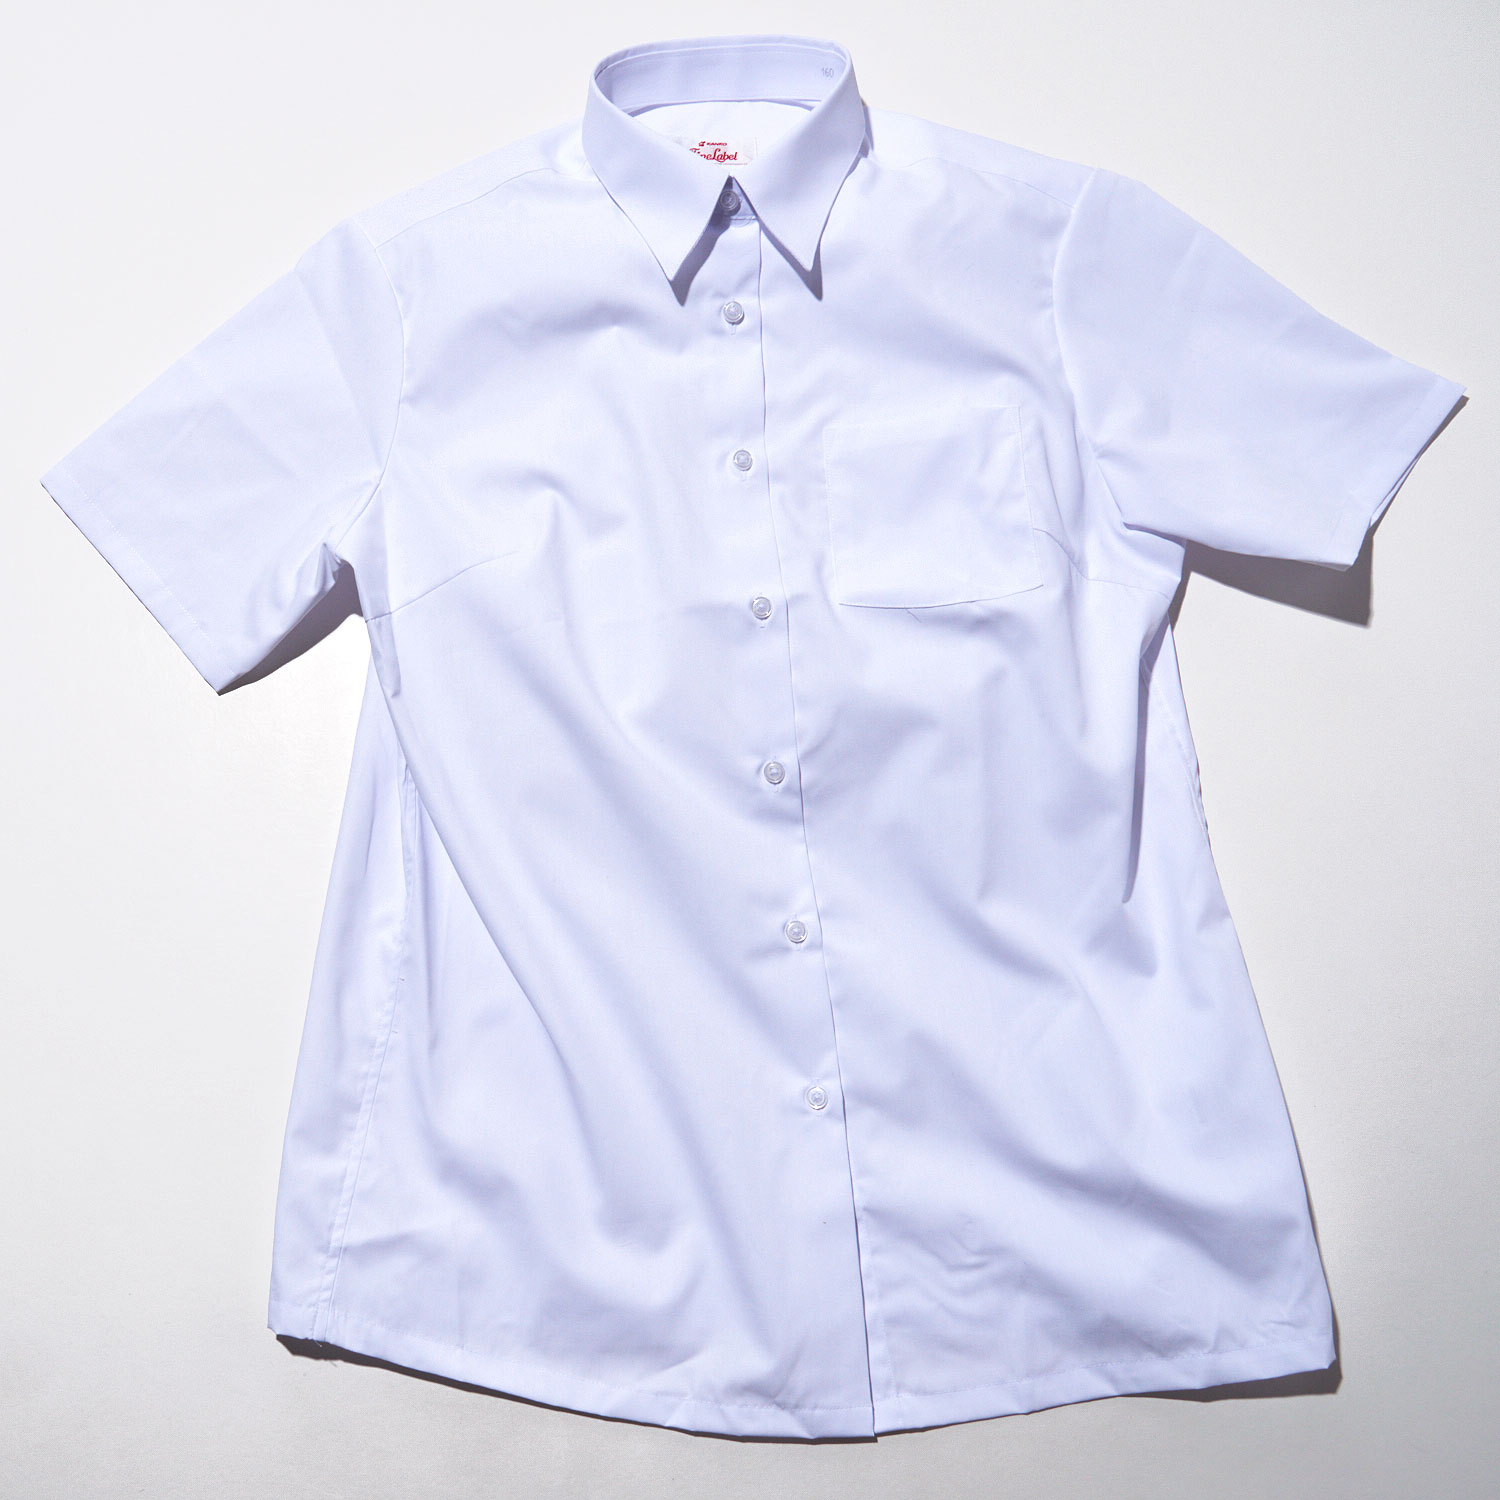 カンコーファインレーベル 女子かなり透けない白いシャツ 半袖 40bk Scho ギフト通販なら東急百貨店ネットショッピング